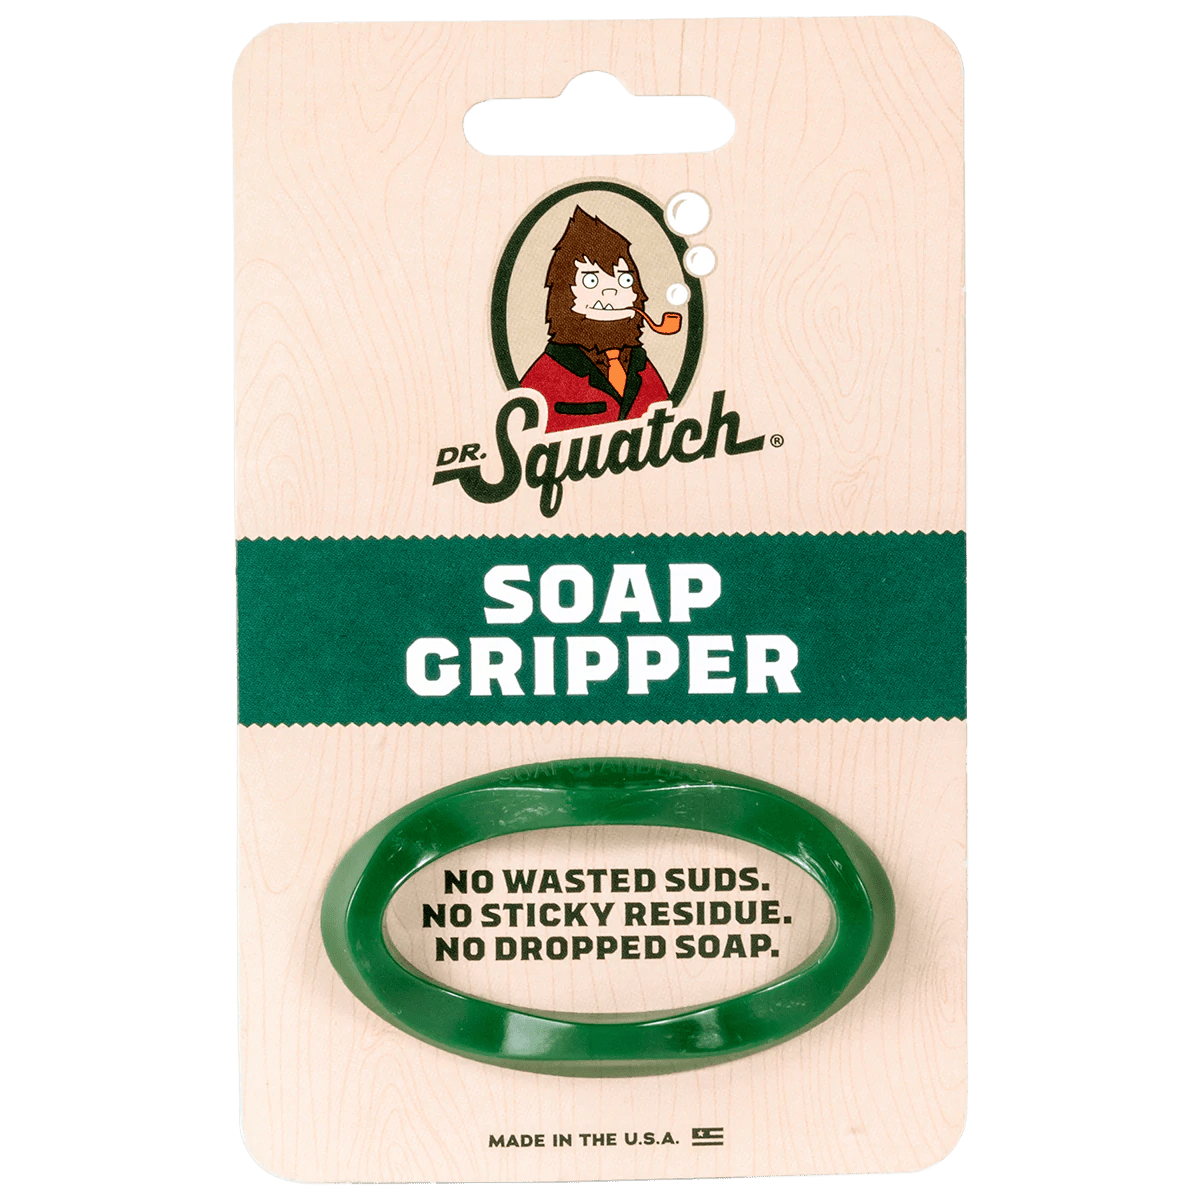 Dr. Squatch Soap Gripper – The Farmhouse